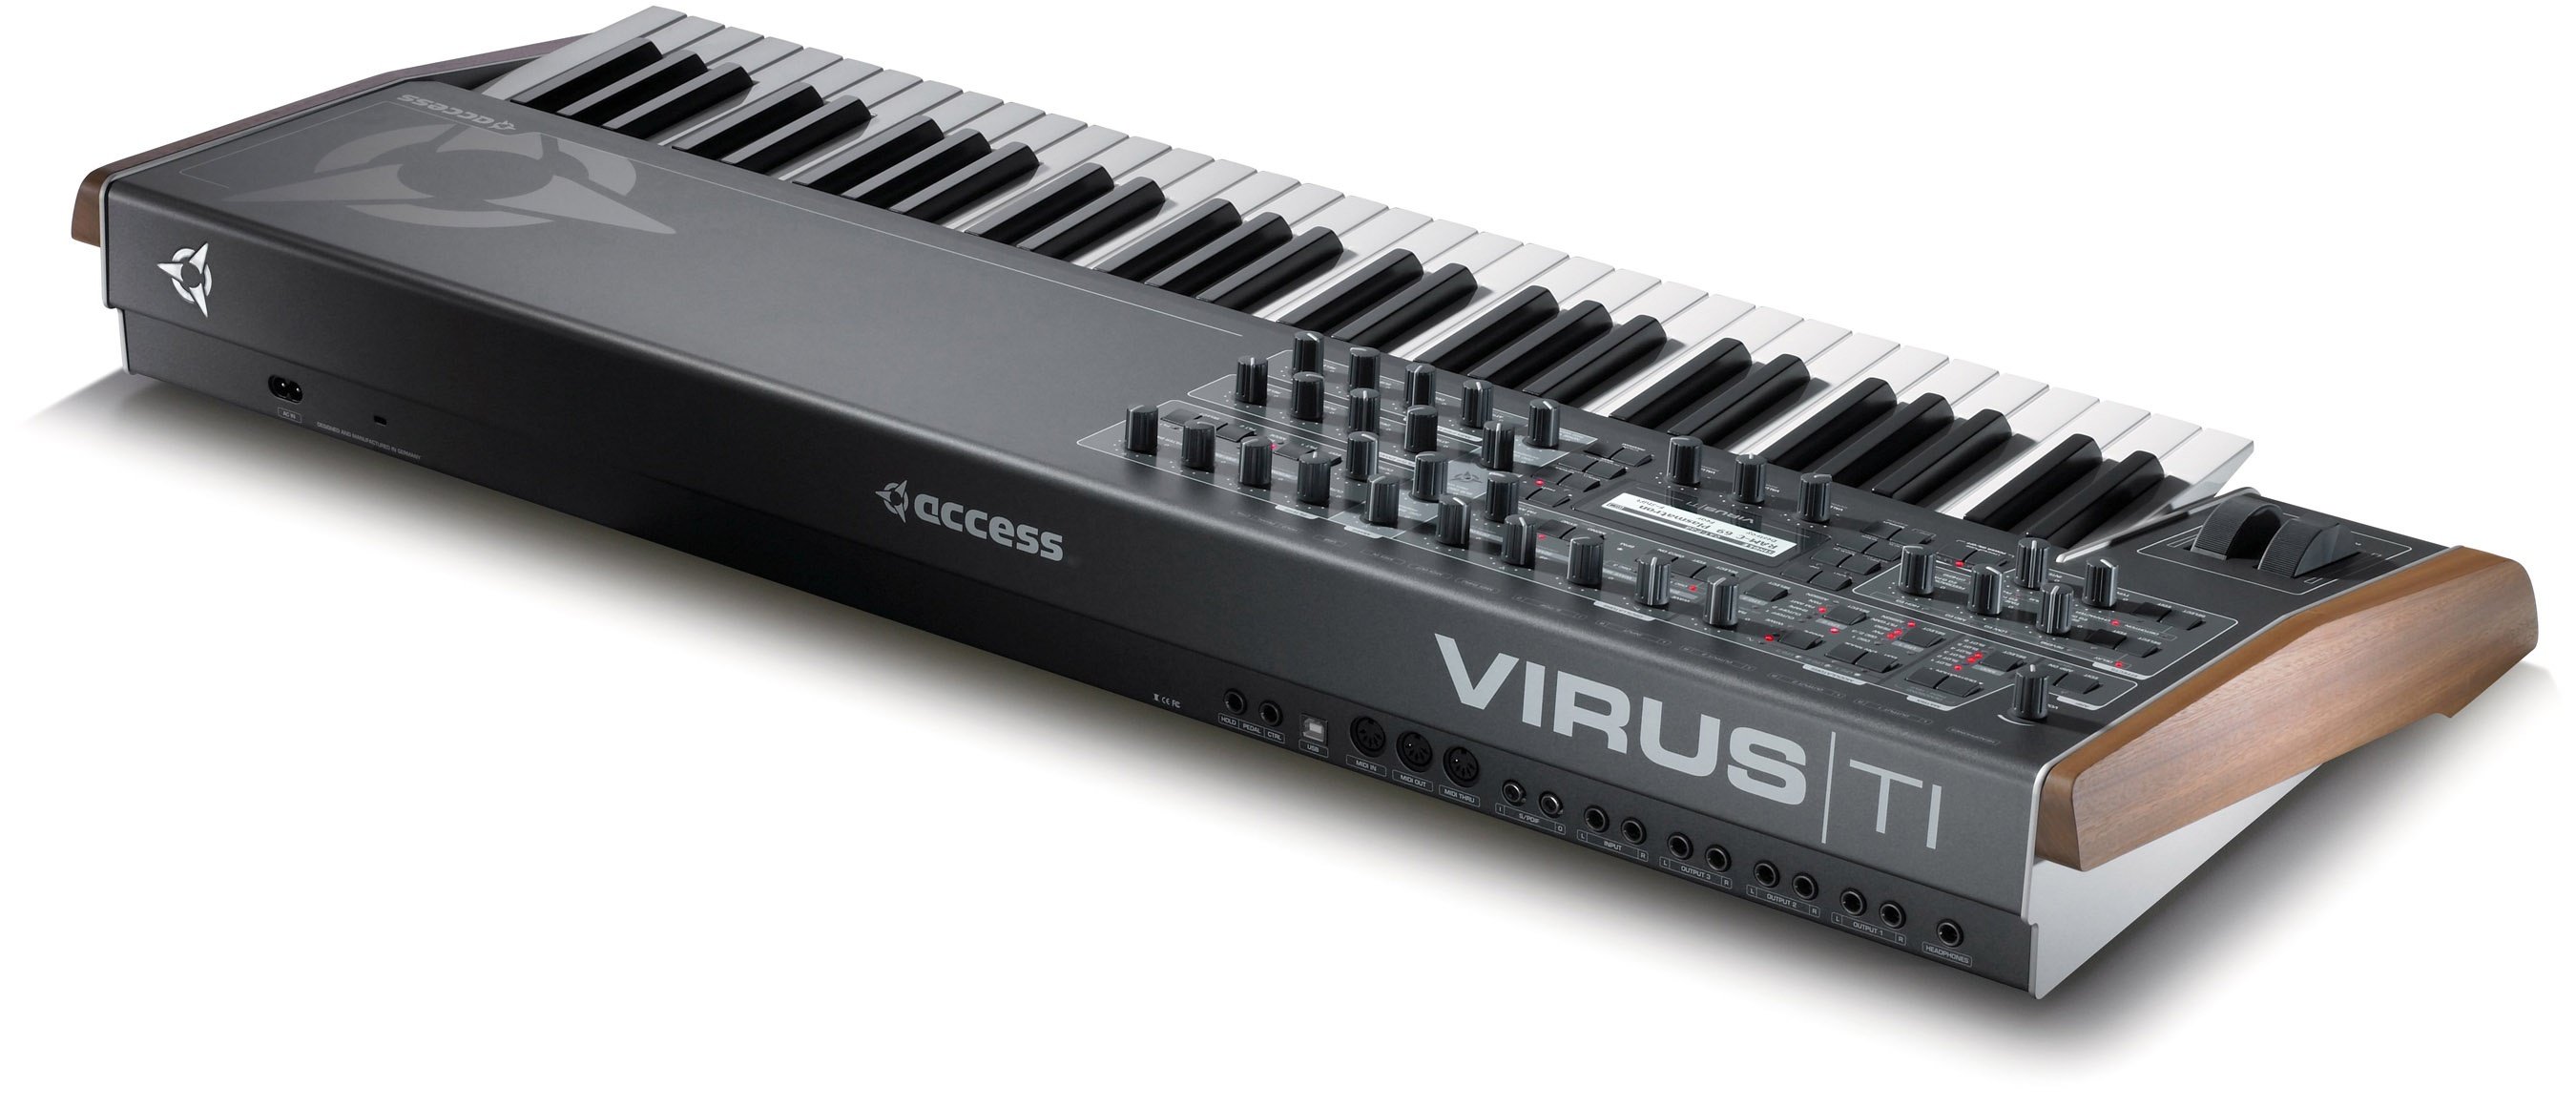   Access Virus TI2 Keyboard